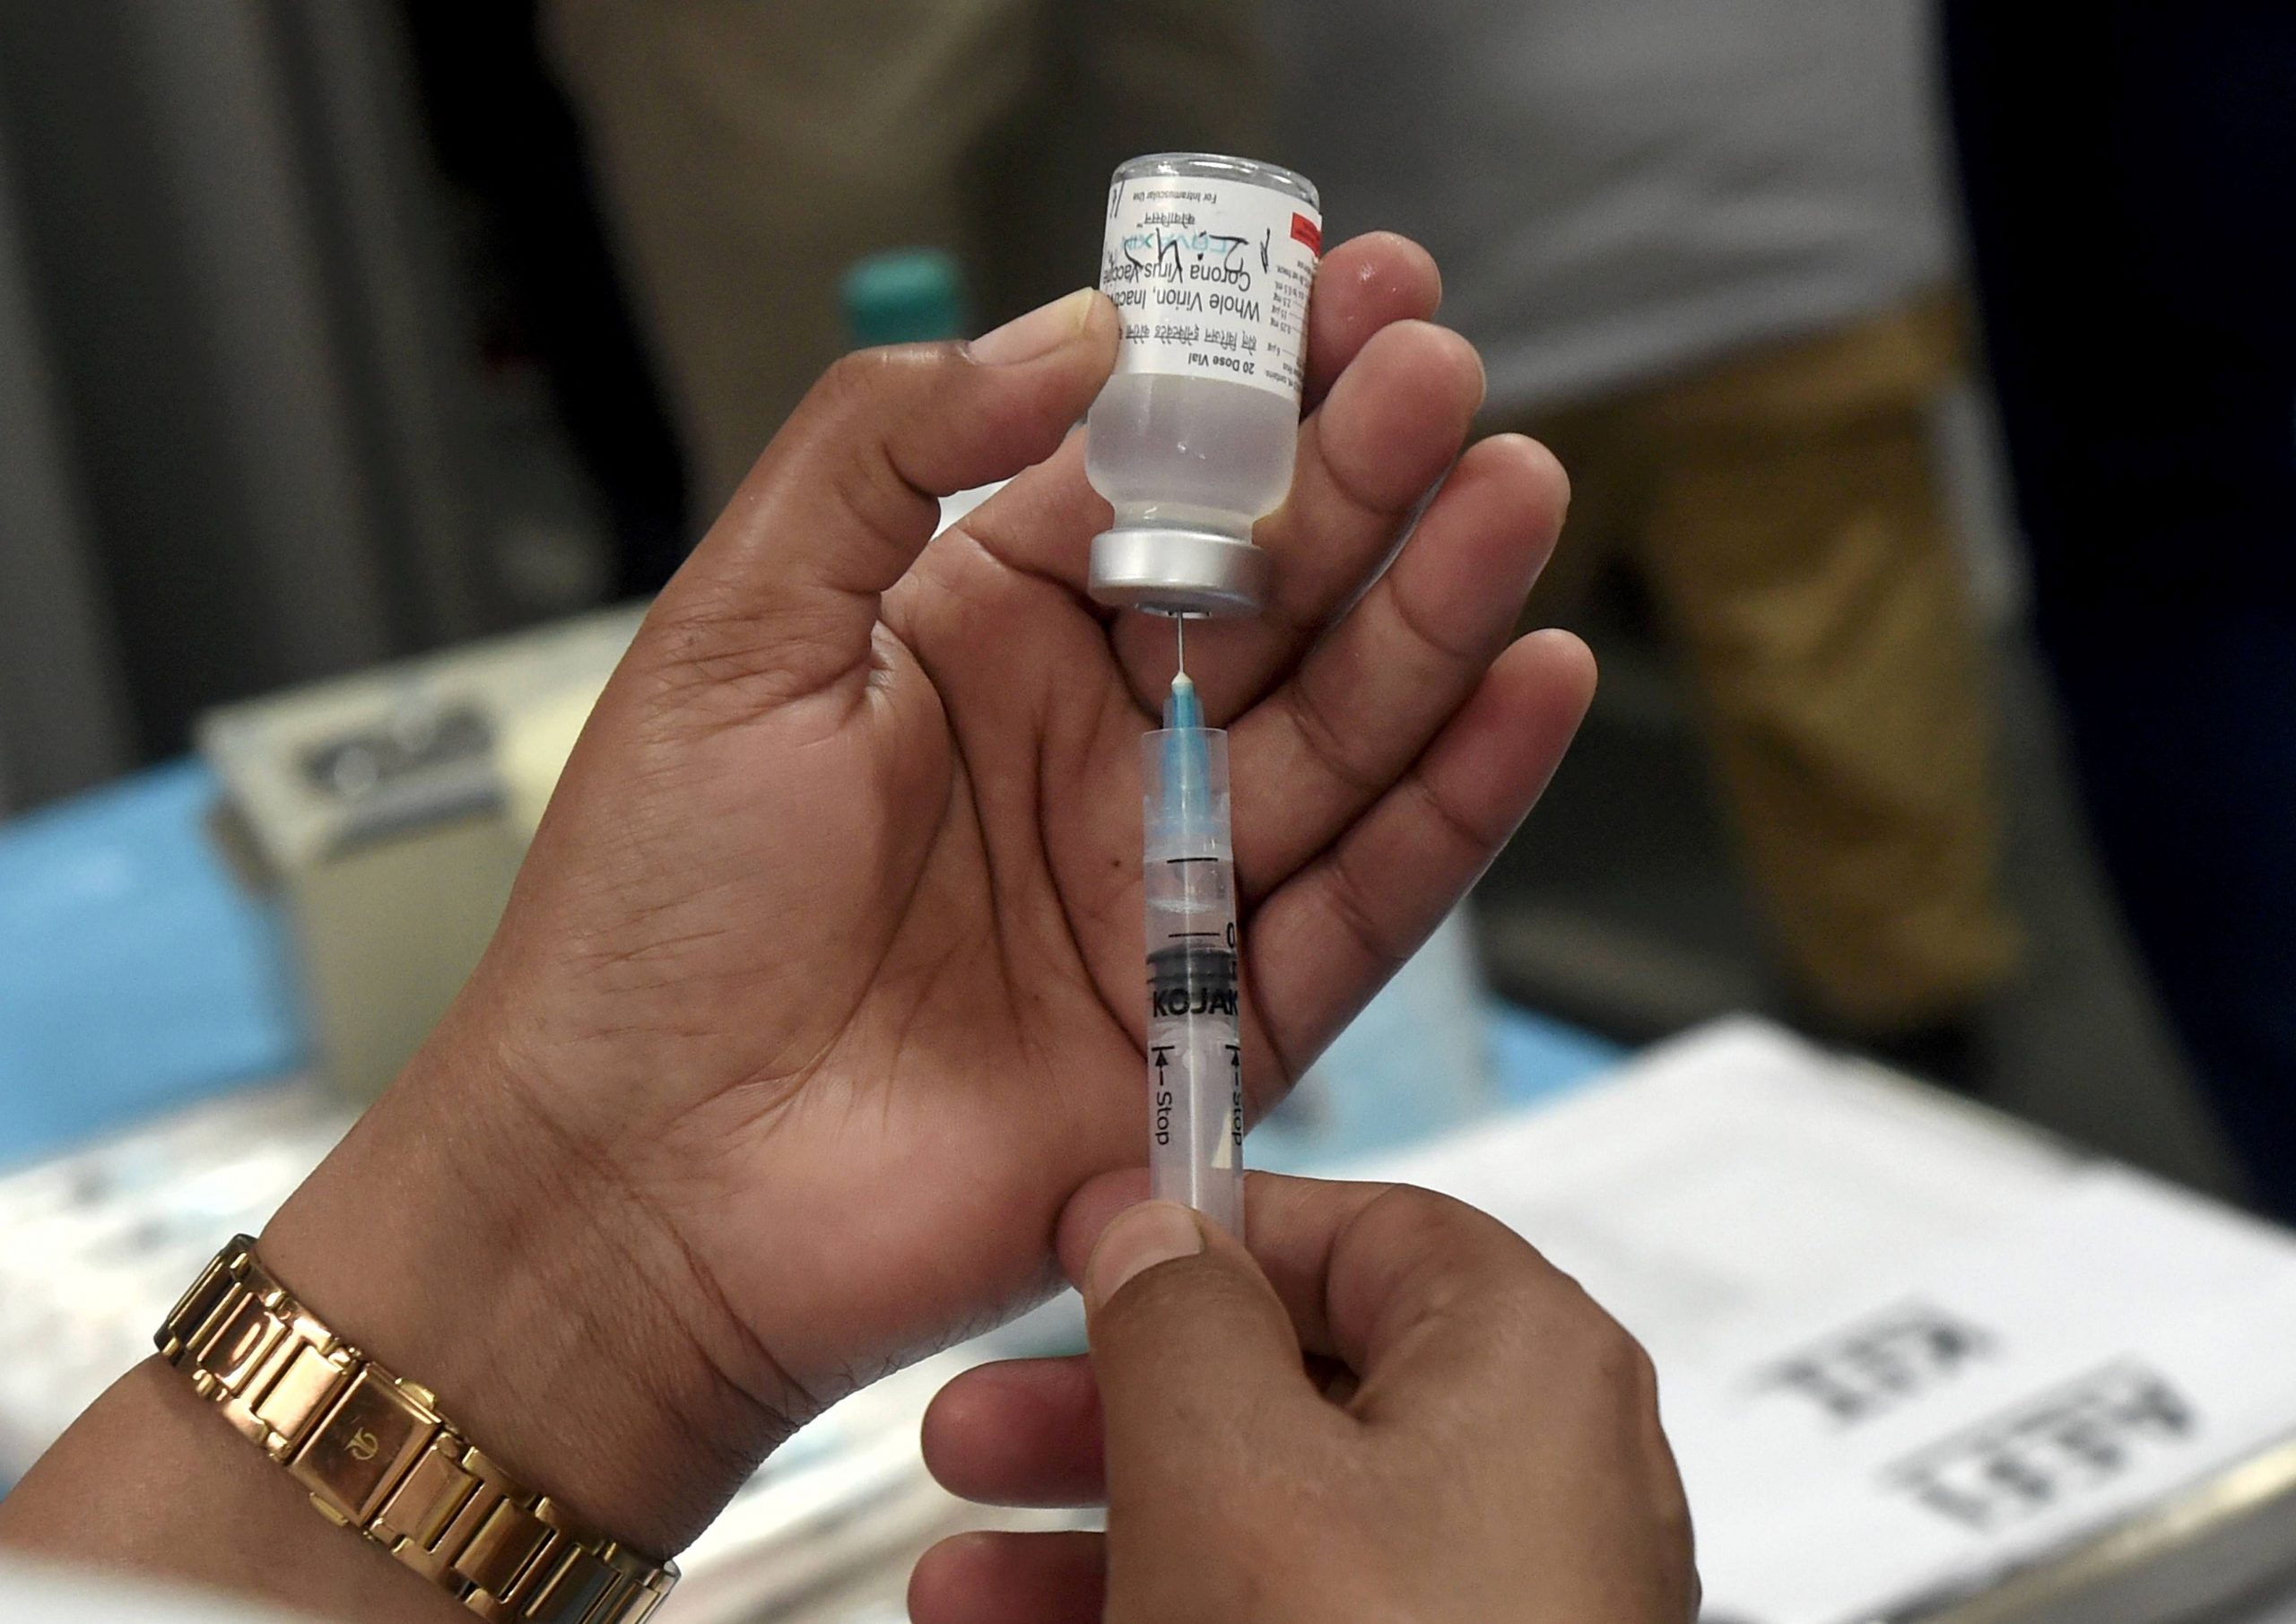 1 मार्च से बुजुर्गों को लगाया जाएगा मुफ्त कोरोना वायरस टीका, प्राइवेट अस्पताल में देना होगा शुल्क